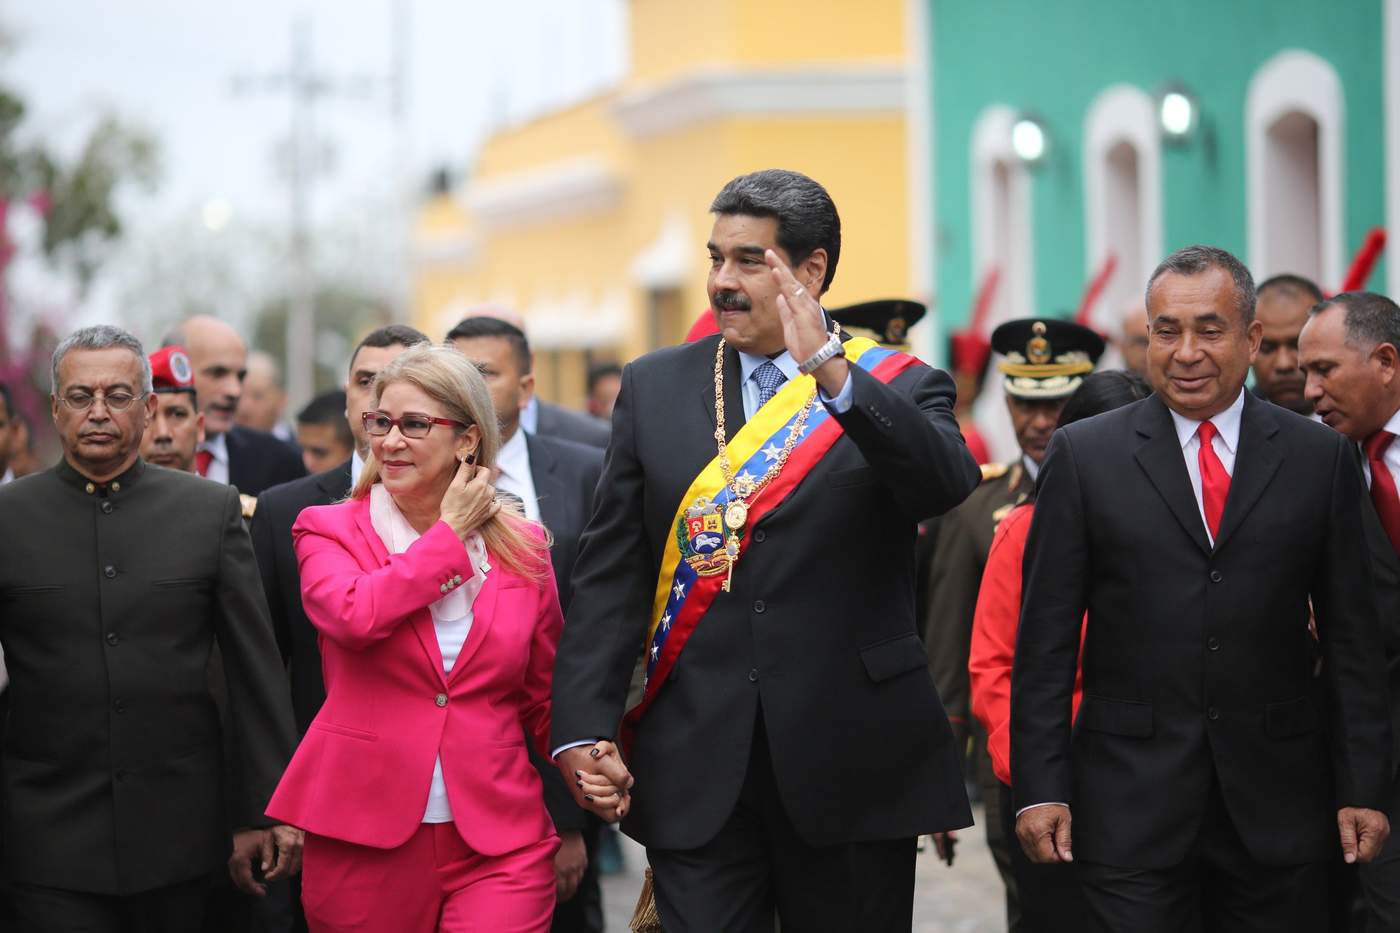 Diálogo, la fórmula para el encuentro entre venezolanos, dice Maduro. Noticias en tiempo real